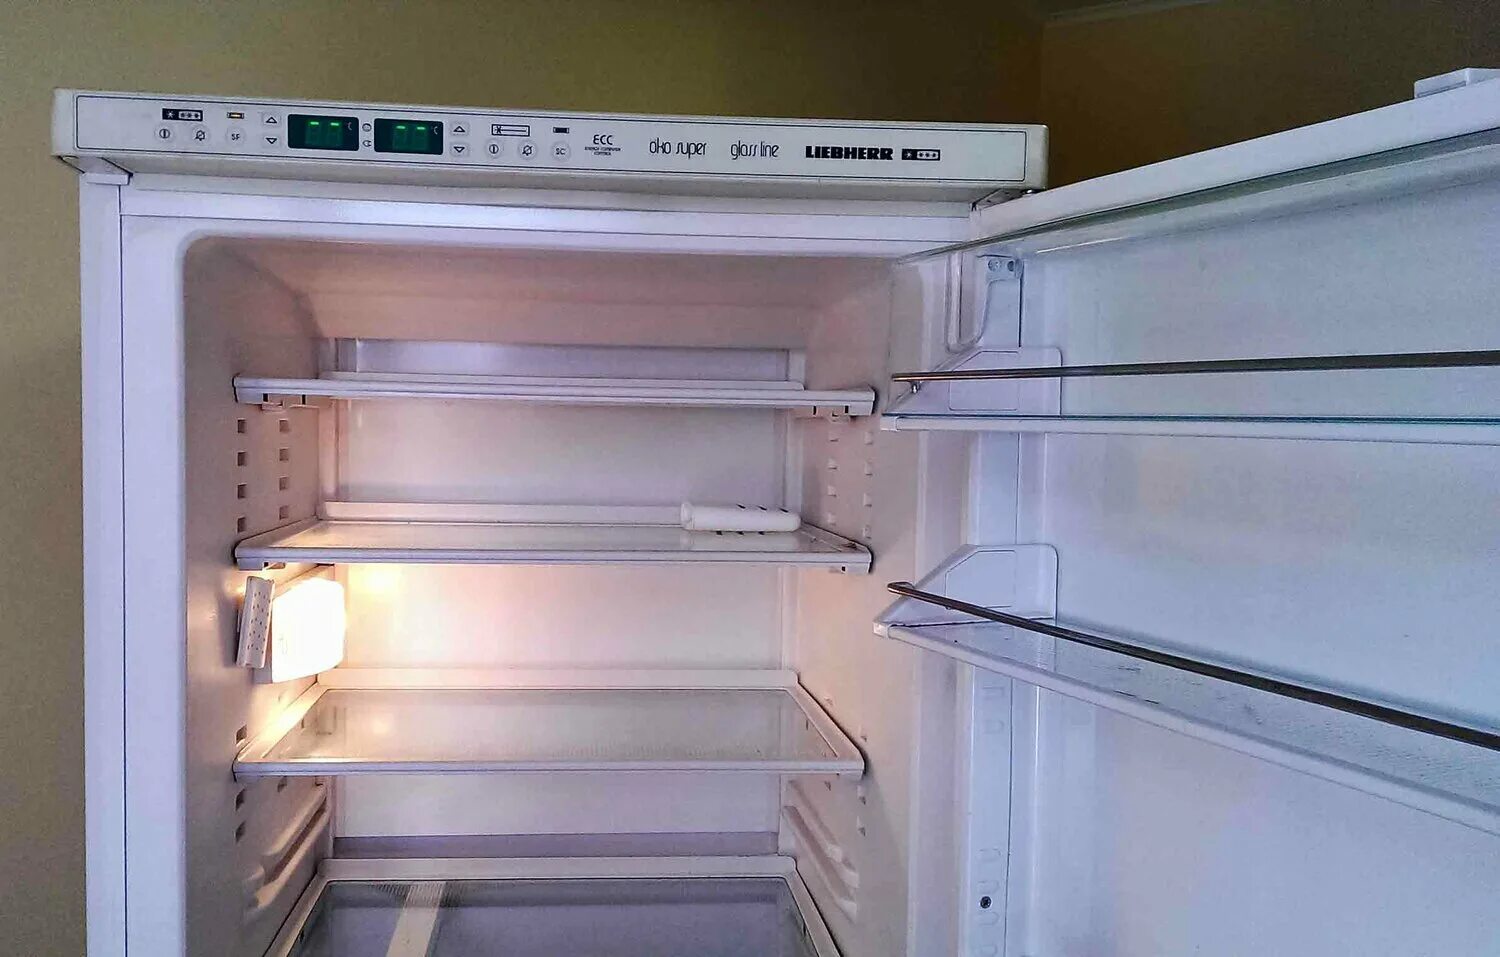 Двухкомпрессорный холодильник Liebherr. Либхер двухкомпрессорный холодильник. KBES 3750 Liebherr. Siemens холодильник двухкомпрессорный.